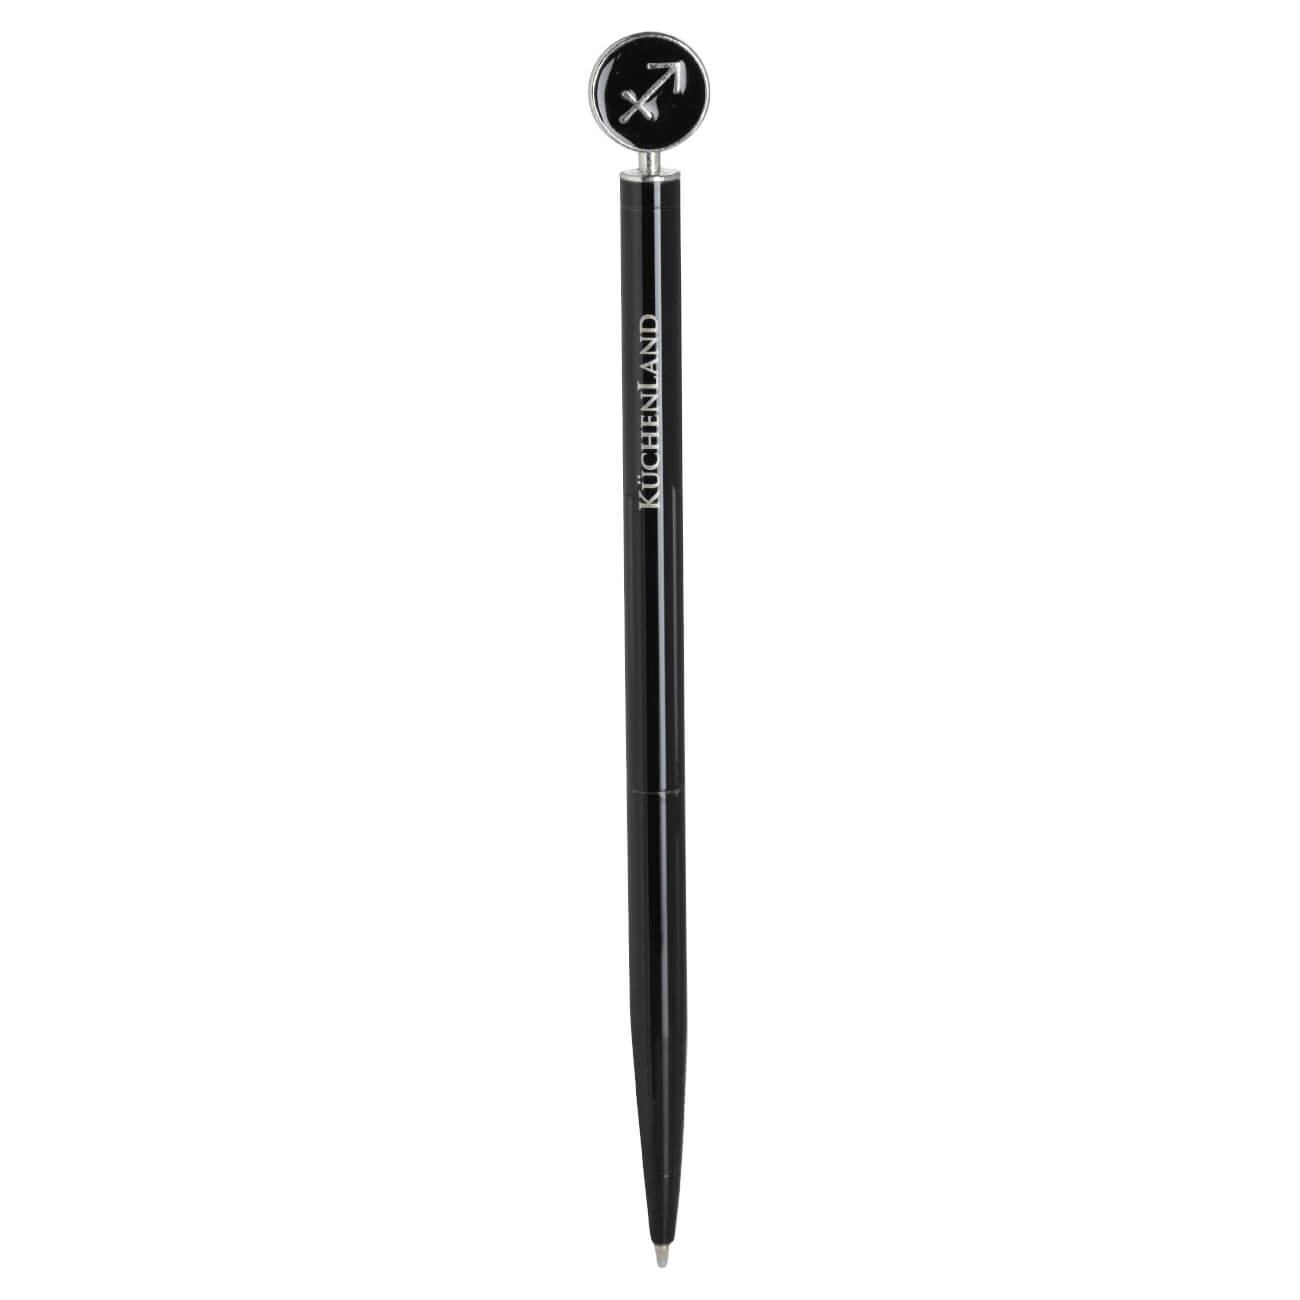 Ручка шариковая, 15 см, с фигуркой, сталь, черно-серебристая, Стрелец, Zodiac ручка закладка